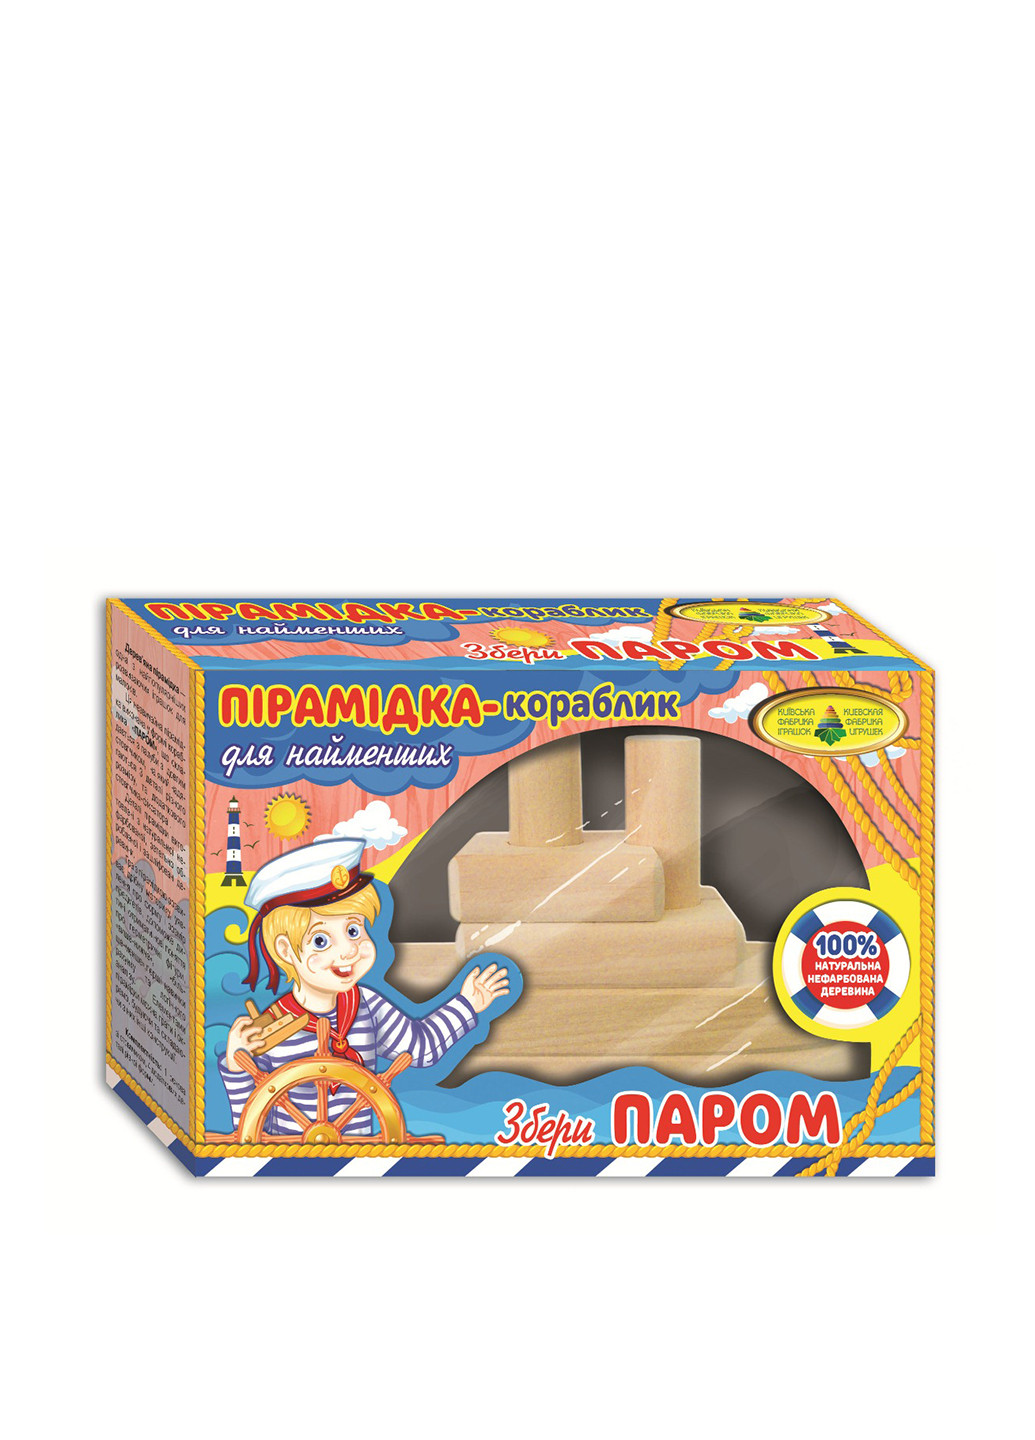 Пірамідка-кораблик Пором, 6 ел. Киевская фабрика игрушек (151191900)